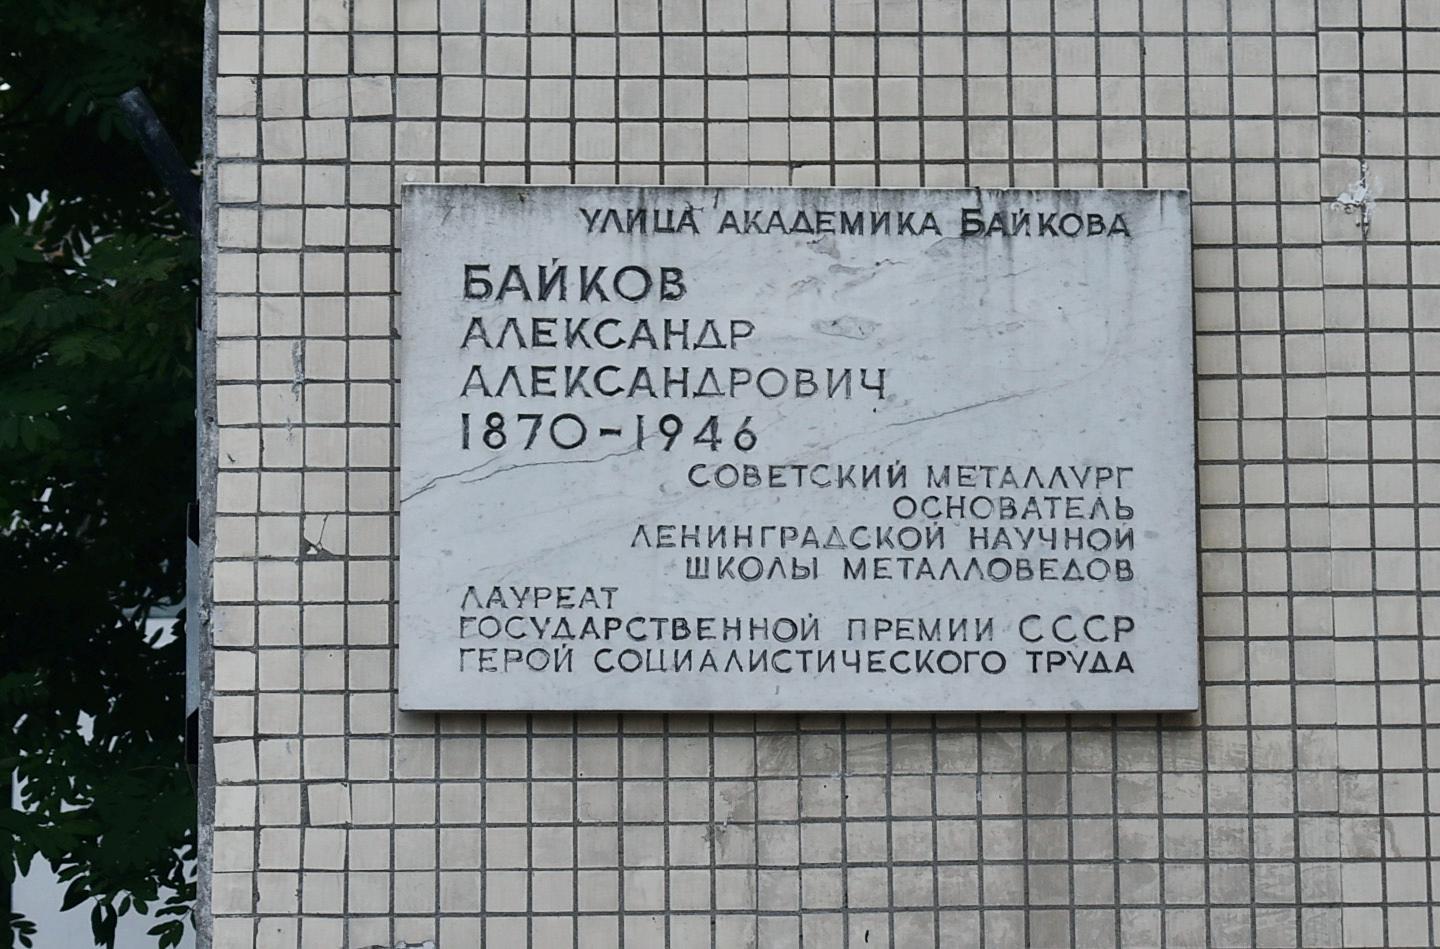 Sankt Petersburg, Улица Академика Байкова, 1. Sankt Petersburg — Memorial plaques